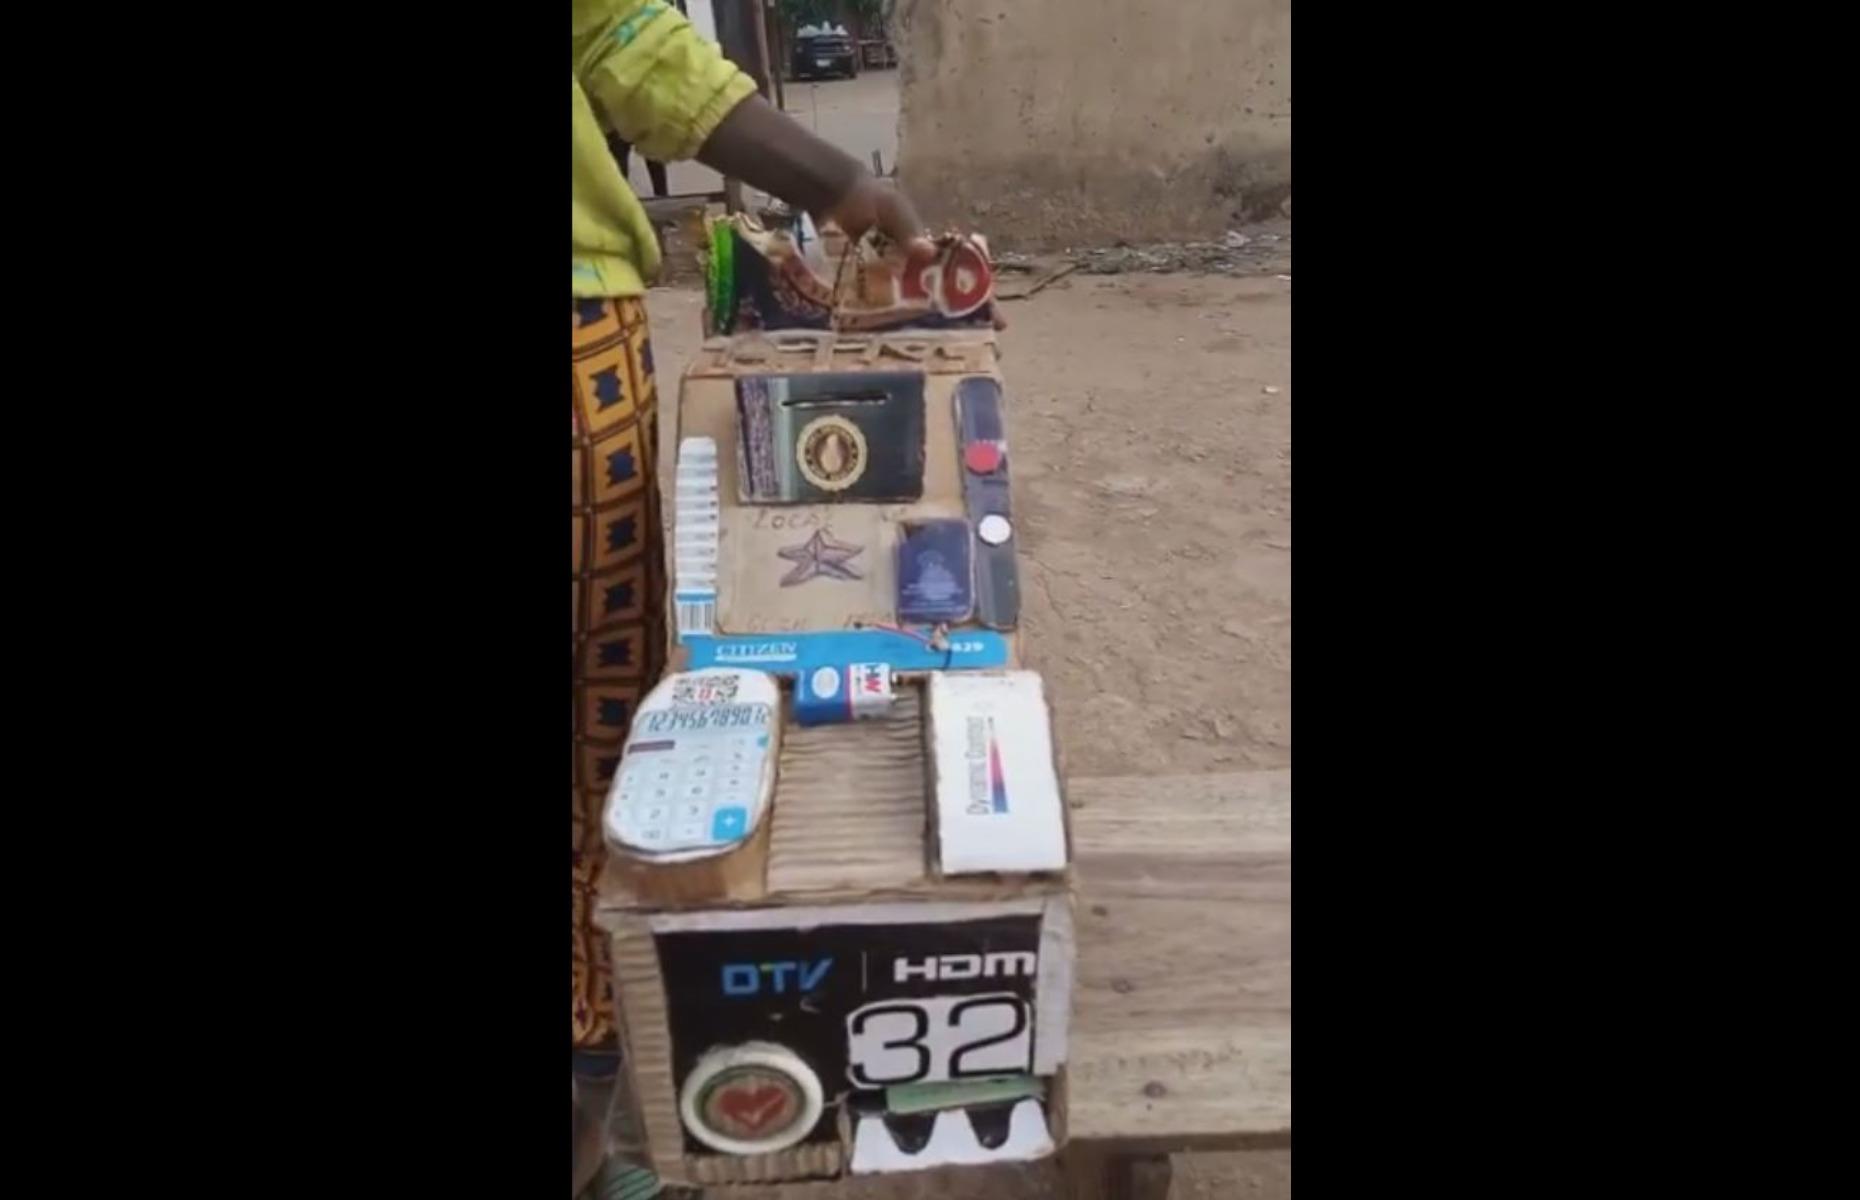 Cardboard ATM − Nigeria